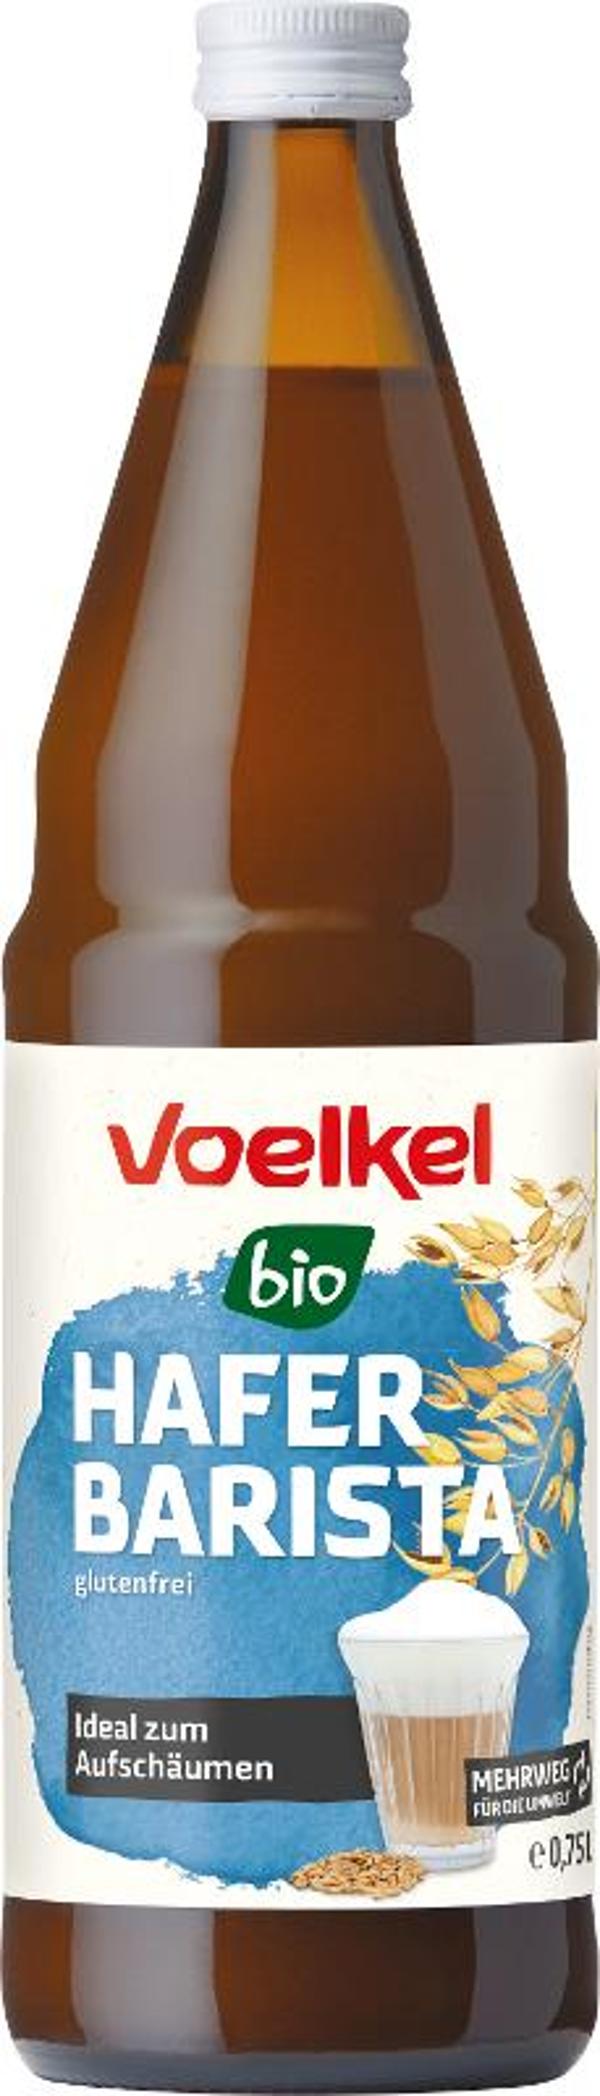 Produktfoto zu Haferdrink Barista Voelkel Mehrwegflasche